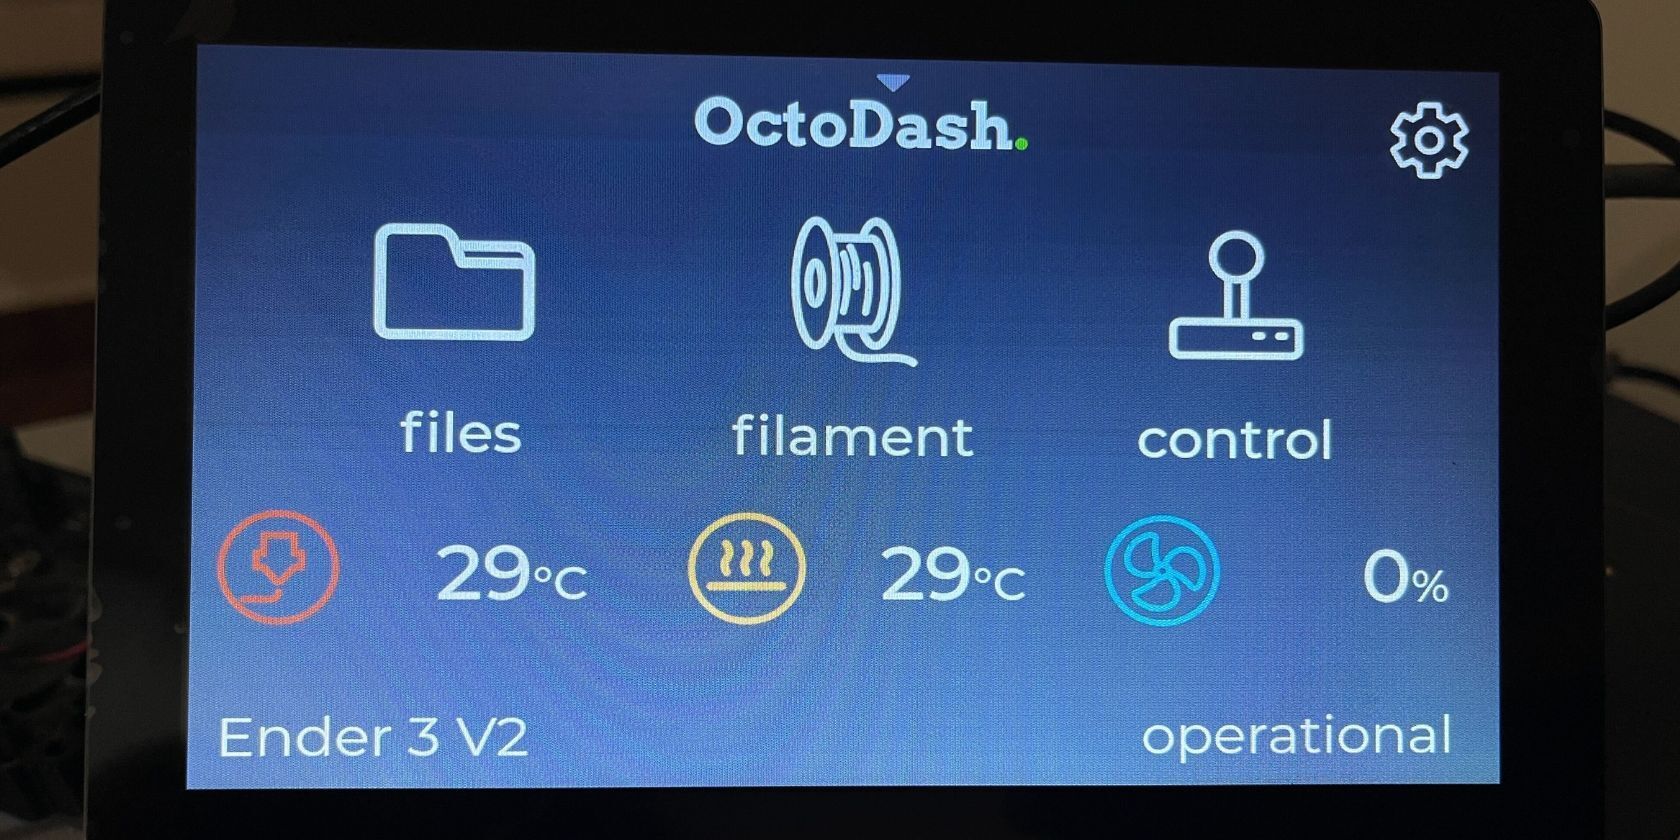 OctoDash dashboard on a touchscreen